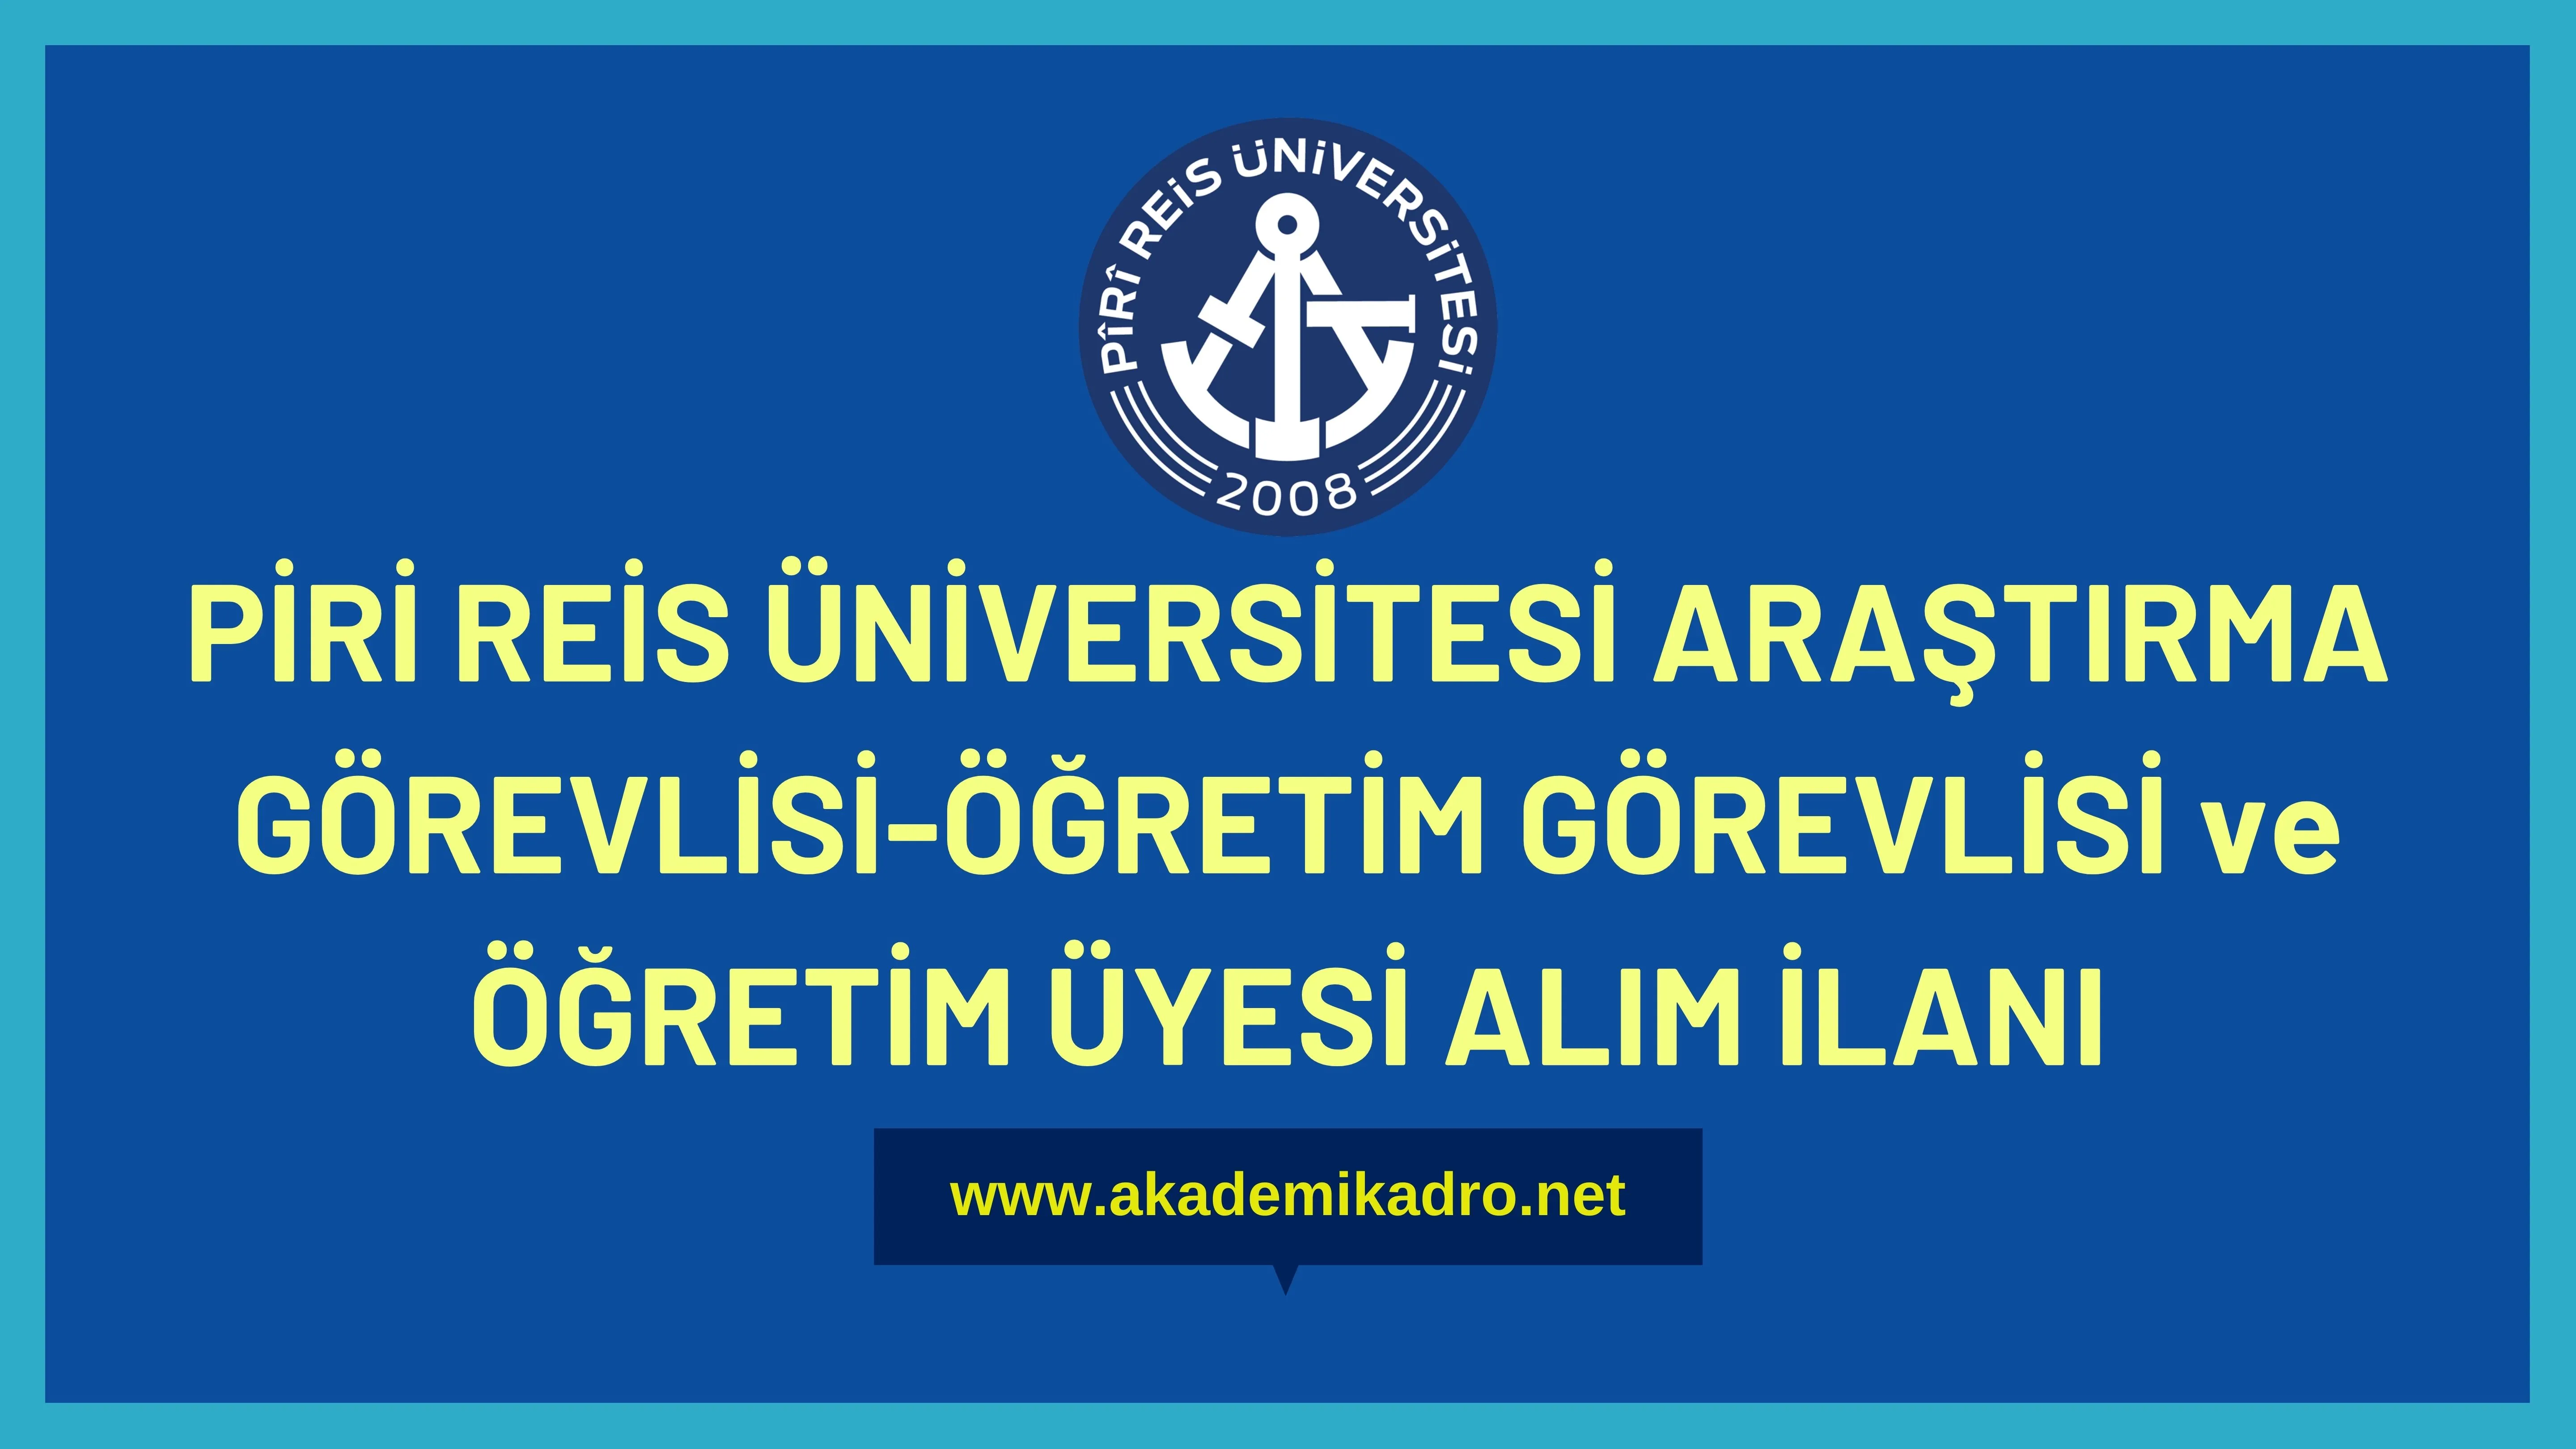 Piri Reis Üniversitesi 11 Araştırma görevlisi, 18 Öğretim görevlisi ve 30 Öğretim üyesi alacak.